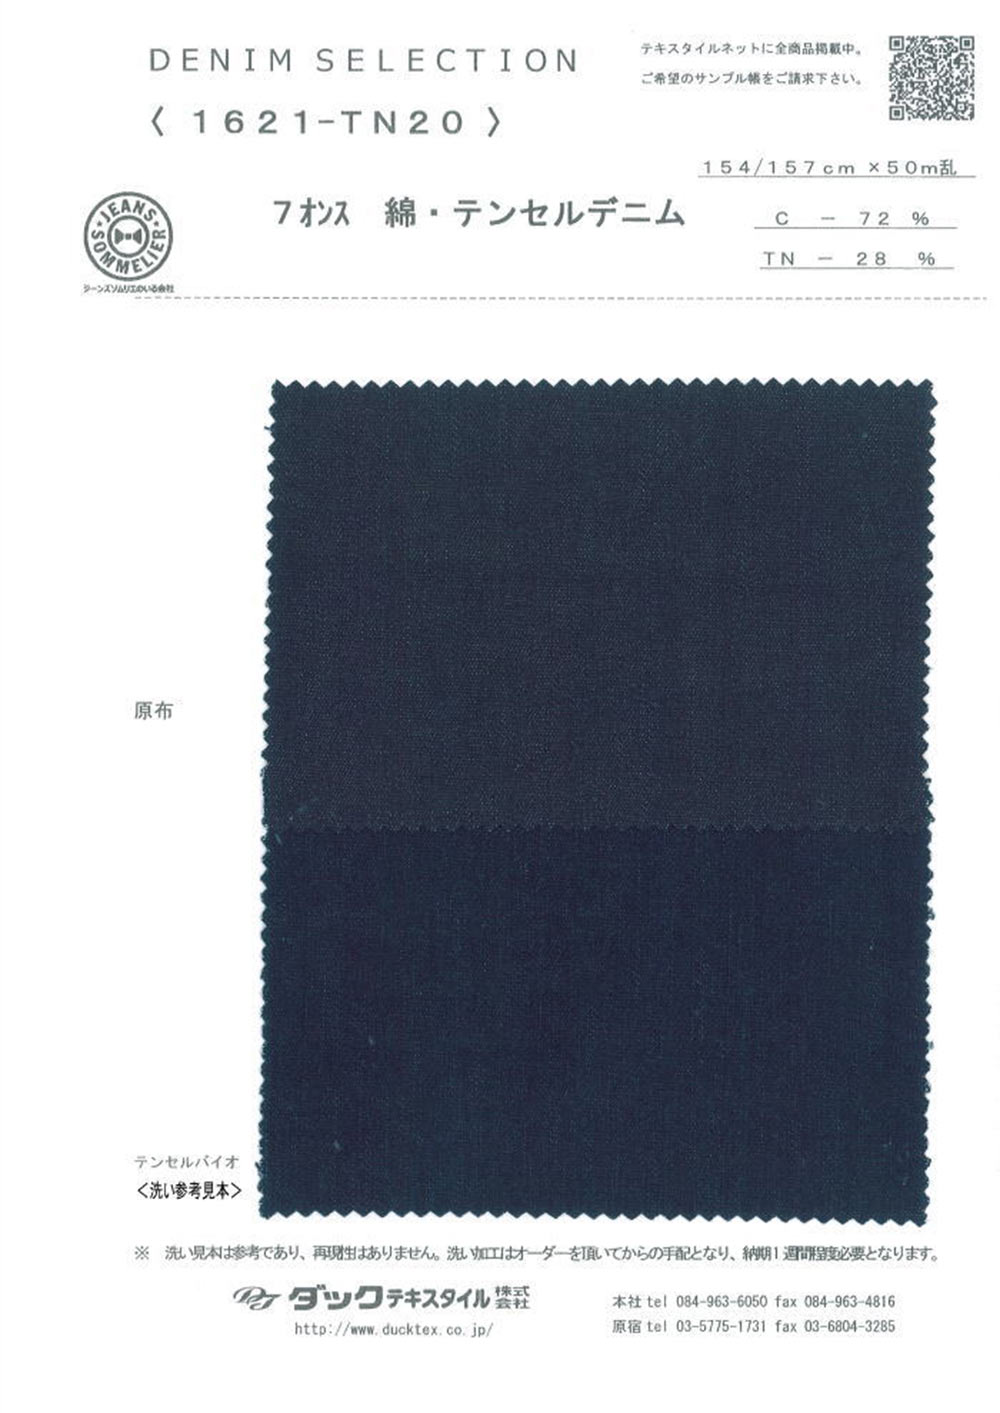 1621-TN20 [Fabrication De Textile] DUCK TEXTILE